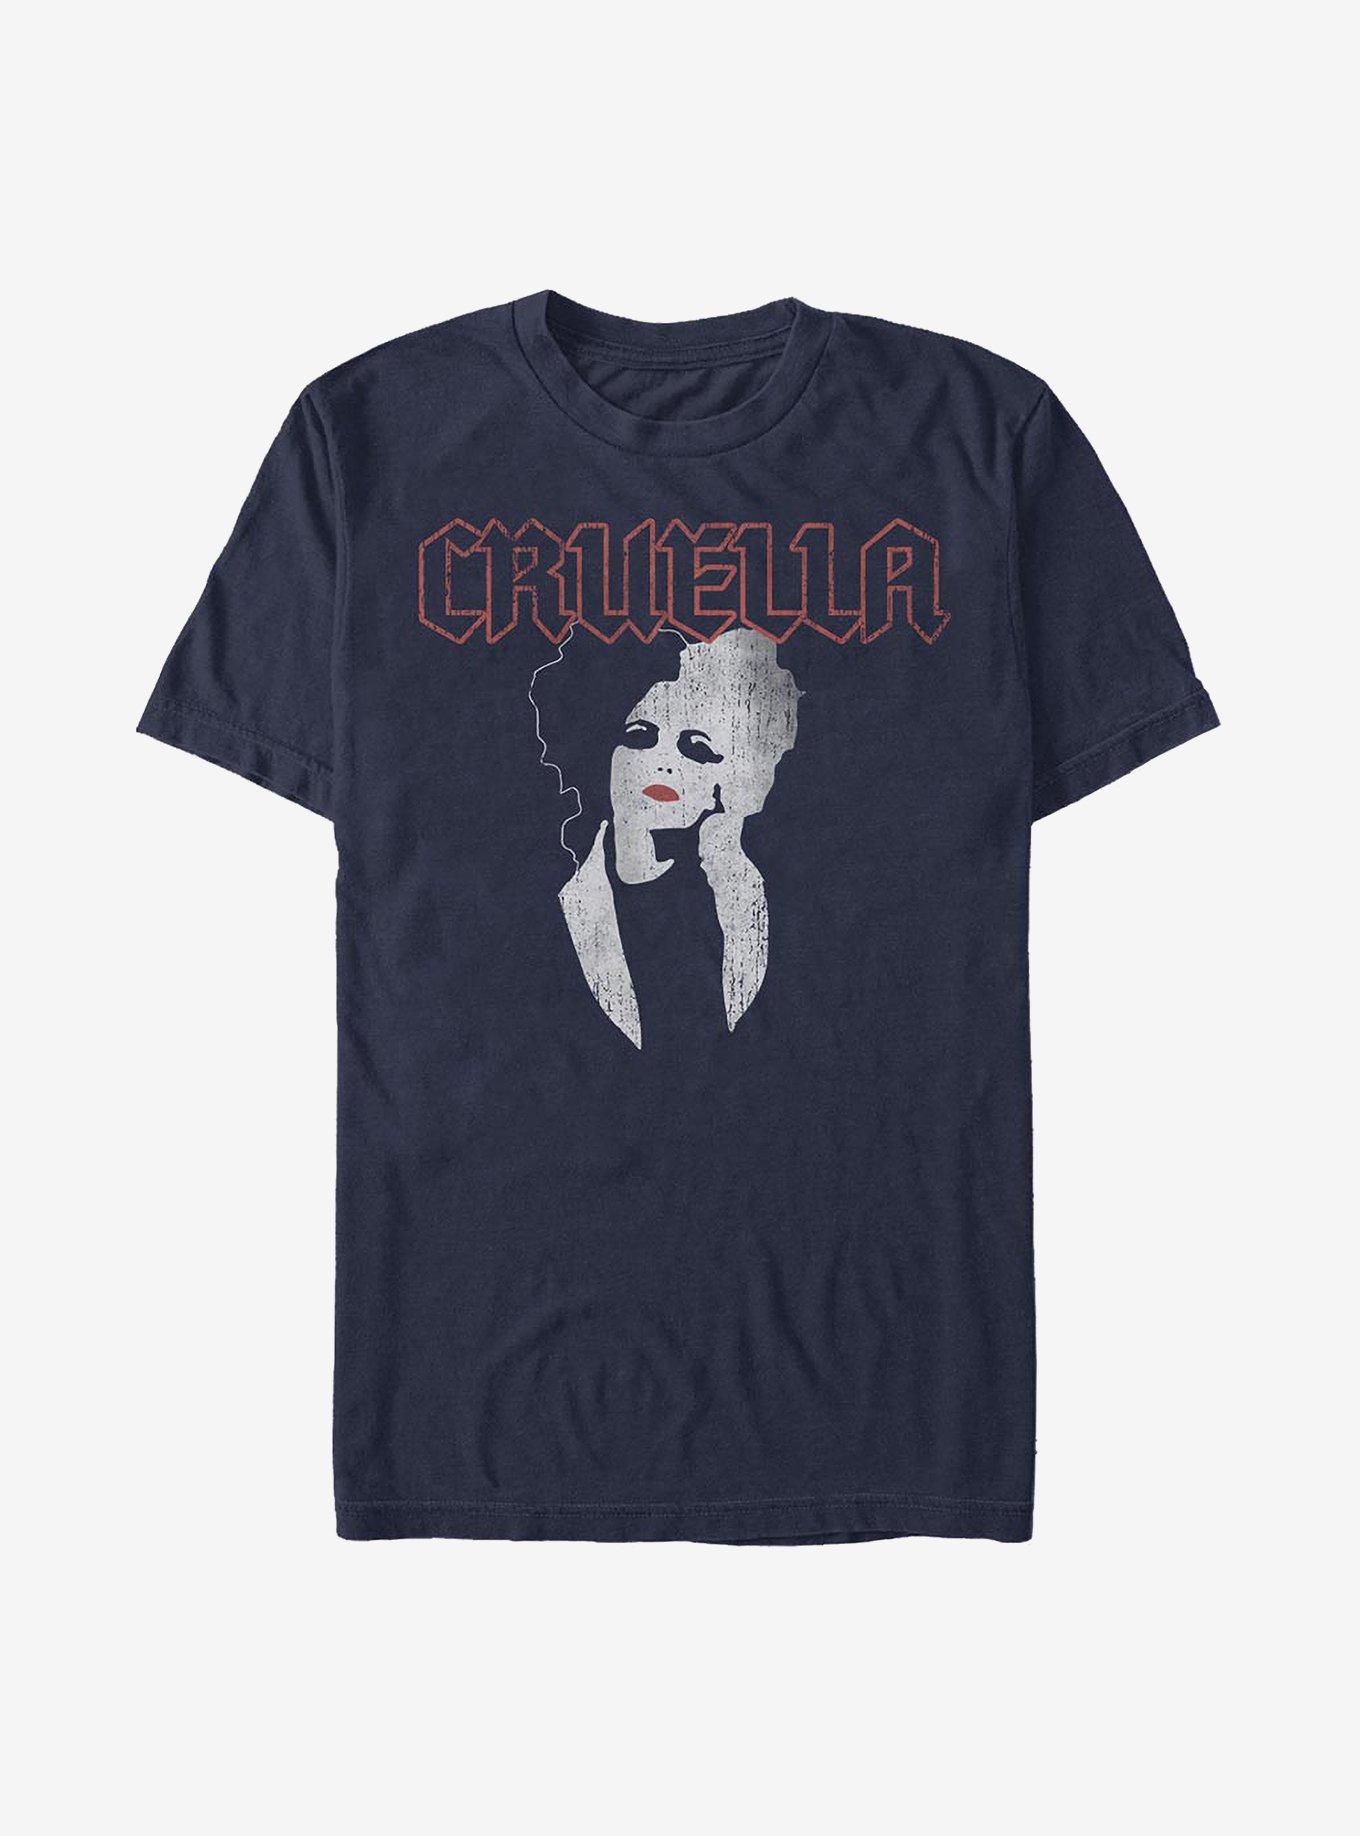 Disney Cruella Rock T-Shirt, NAVY, hi-res